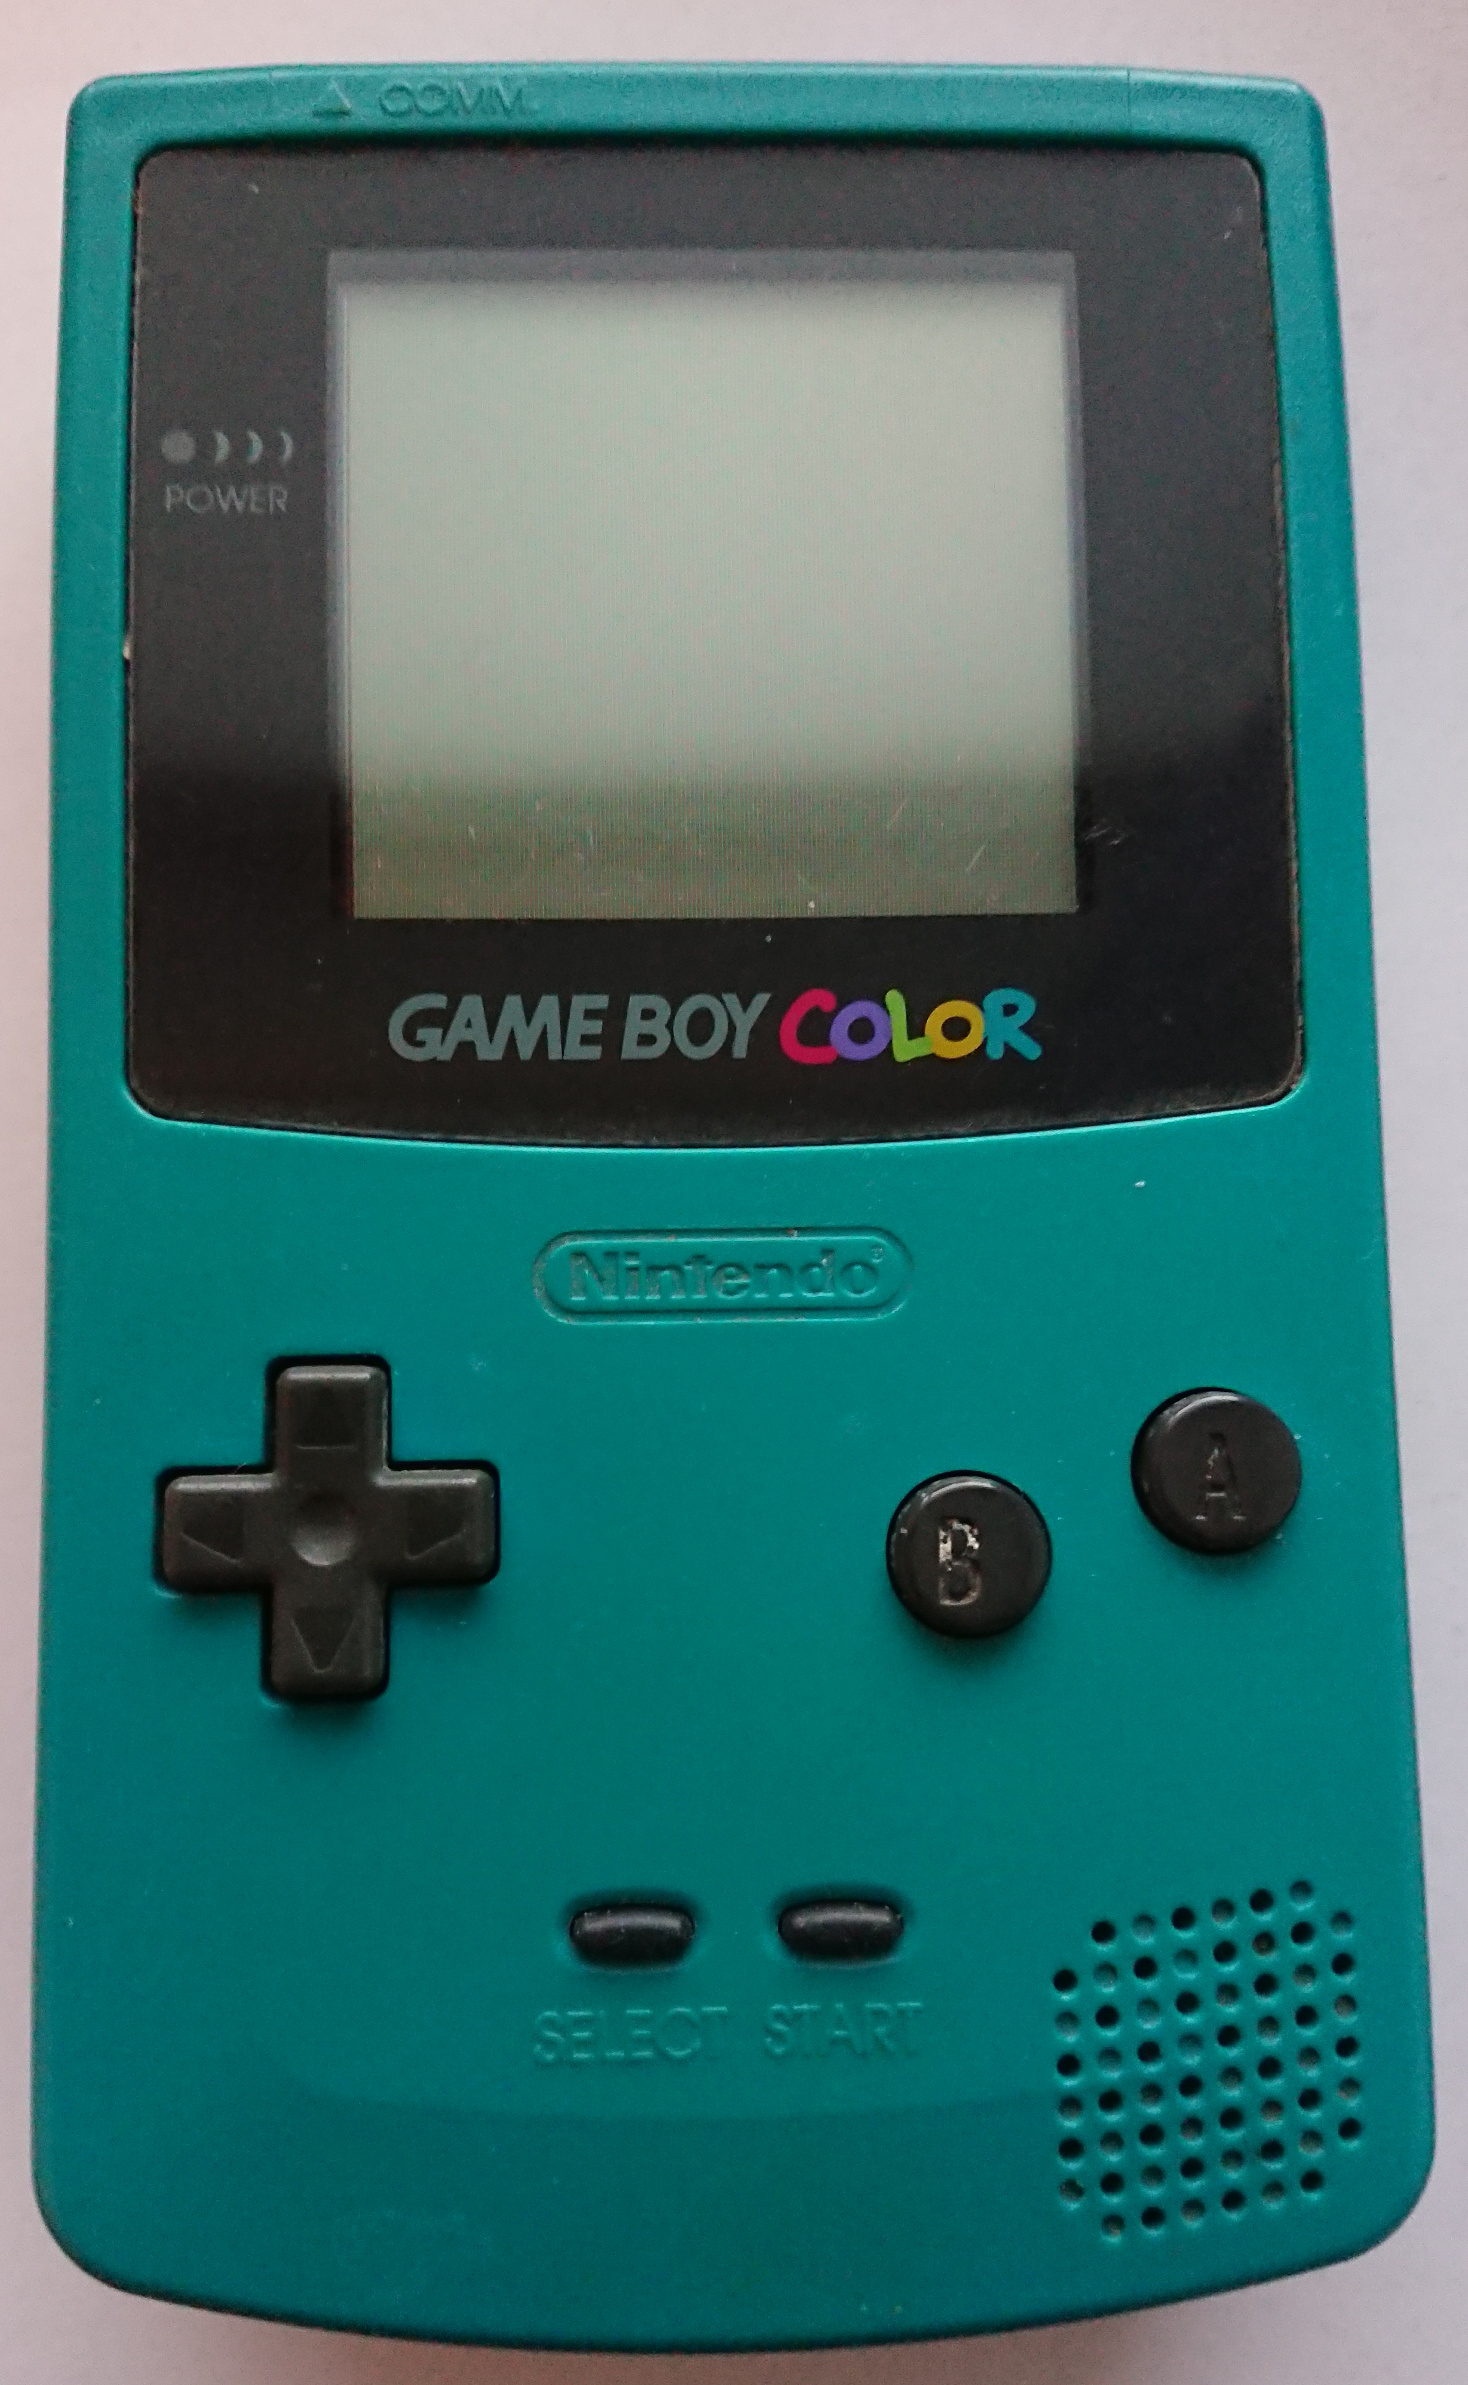 CGB: C11778414 [gekkio] - Game Boy hardware database